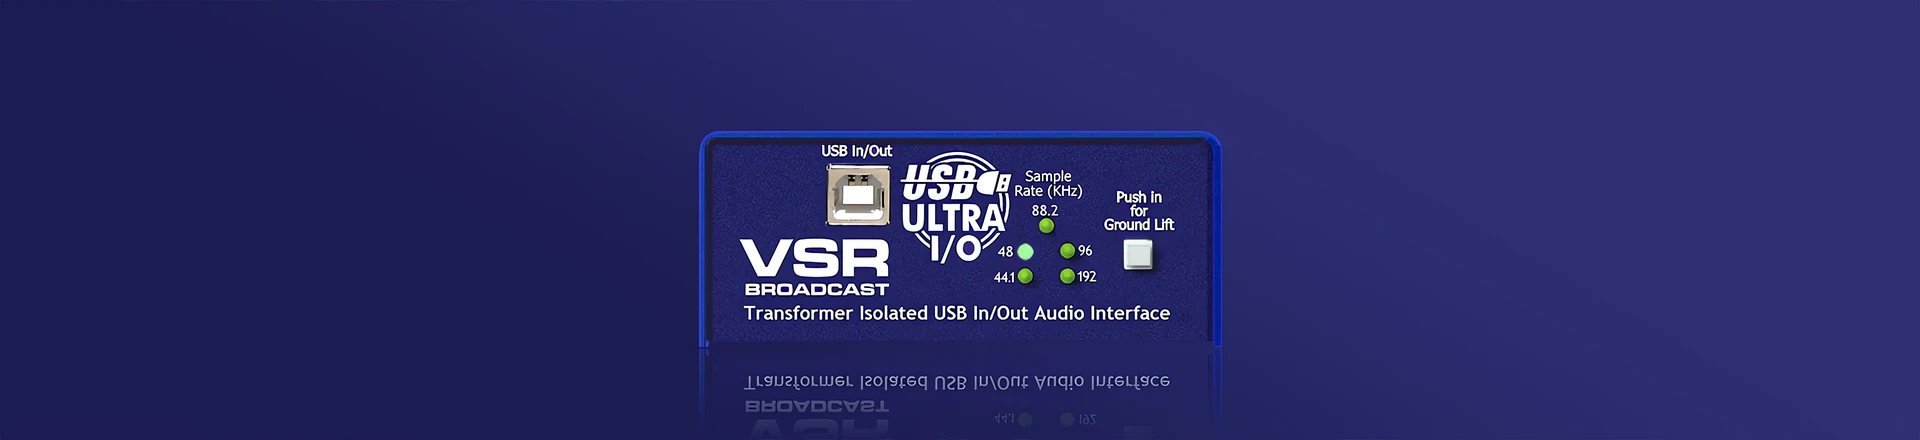 USB Ultra I/O VSR Broadcast - Nowość w rodzinie ARX Audibox